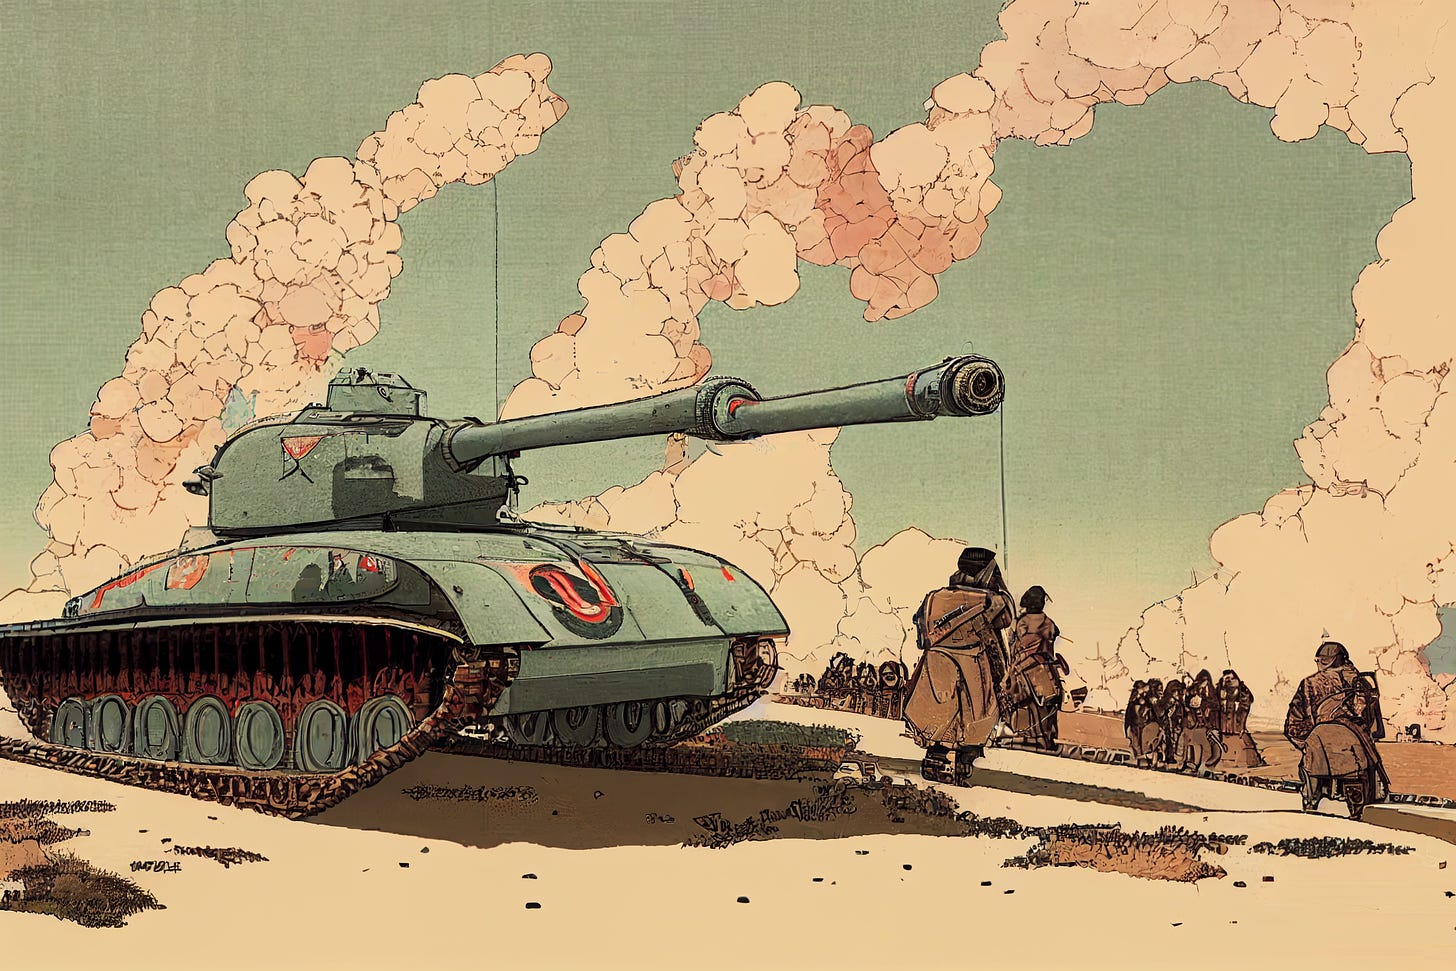 world war 2 tank in ukiyo-e artstyle